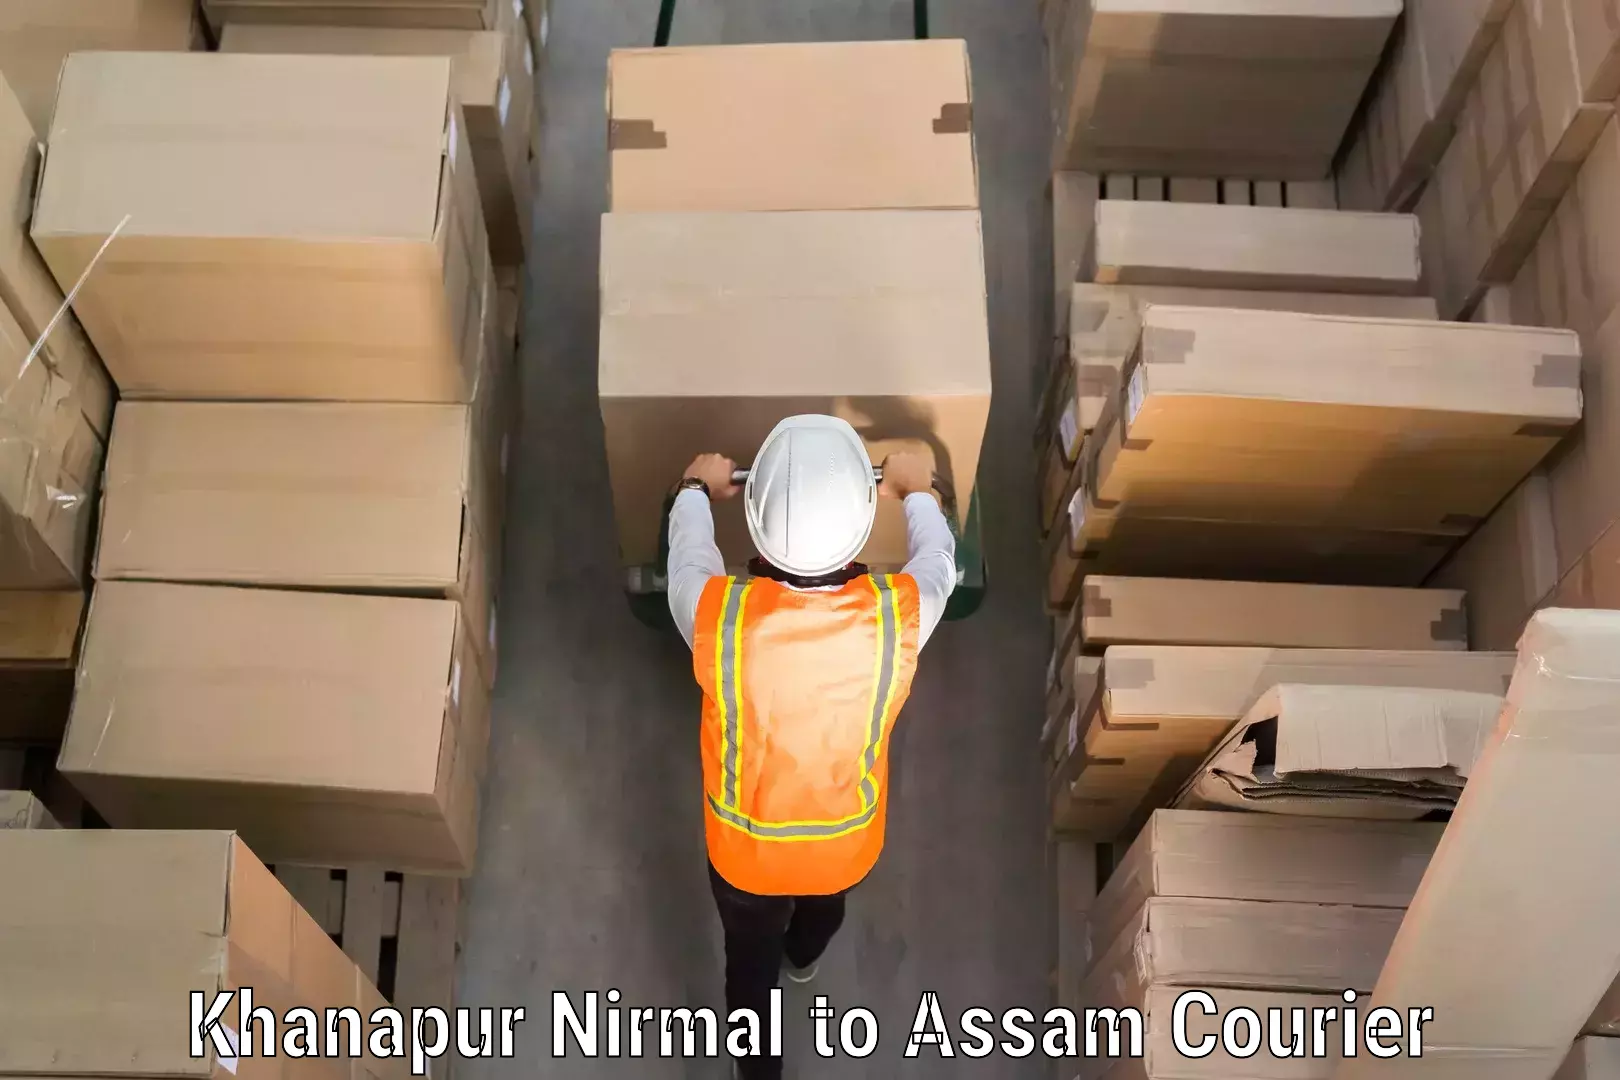 Luggage shipment tracking Khanapur Nirmal to Hajo